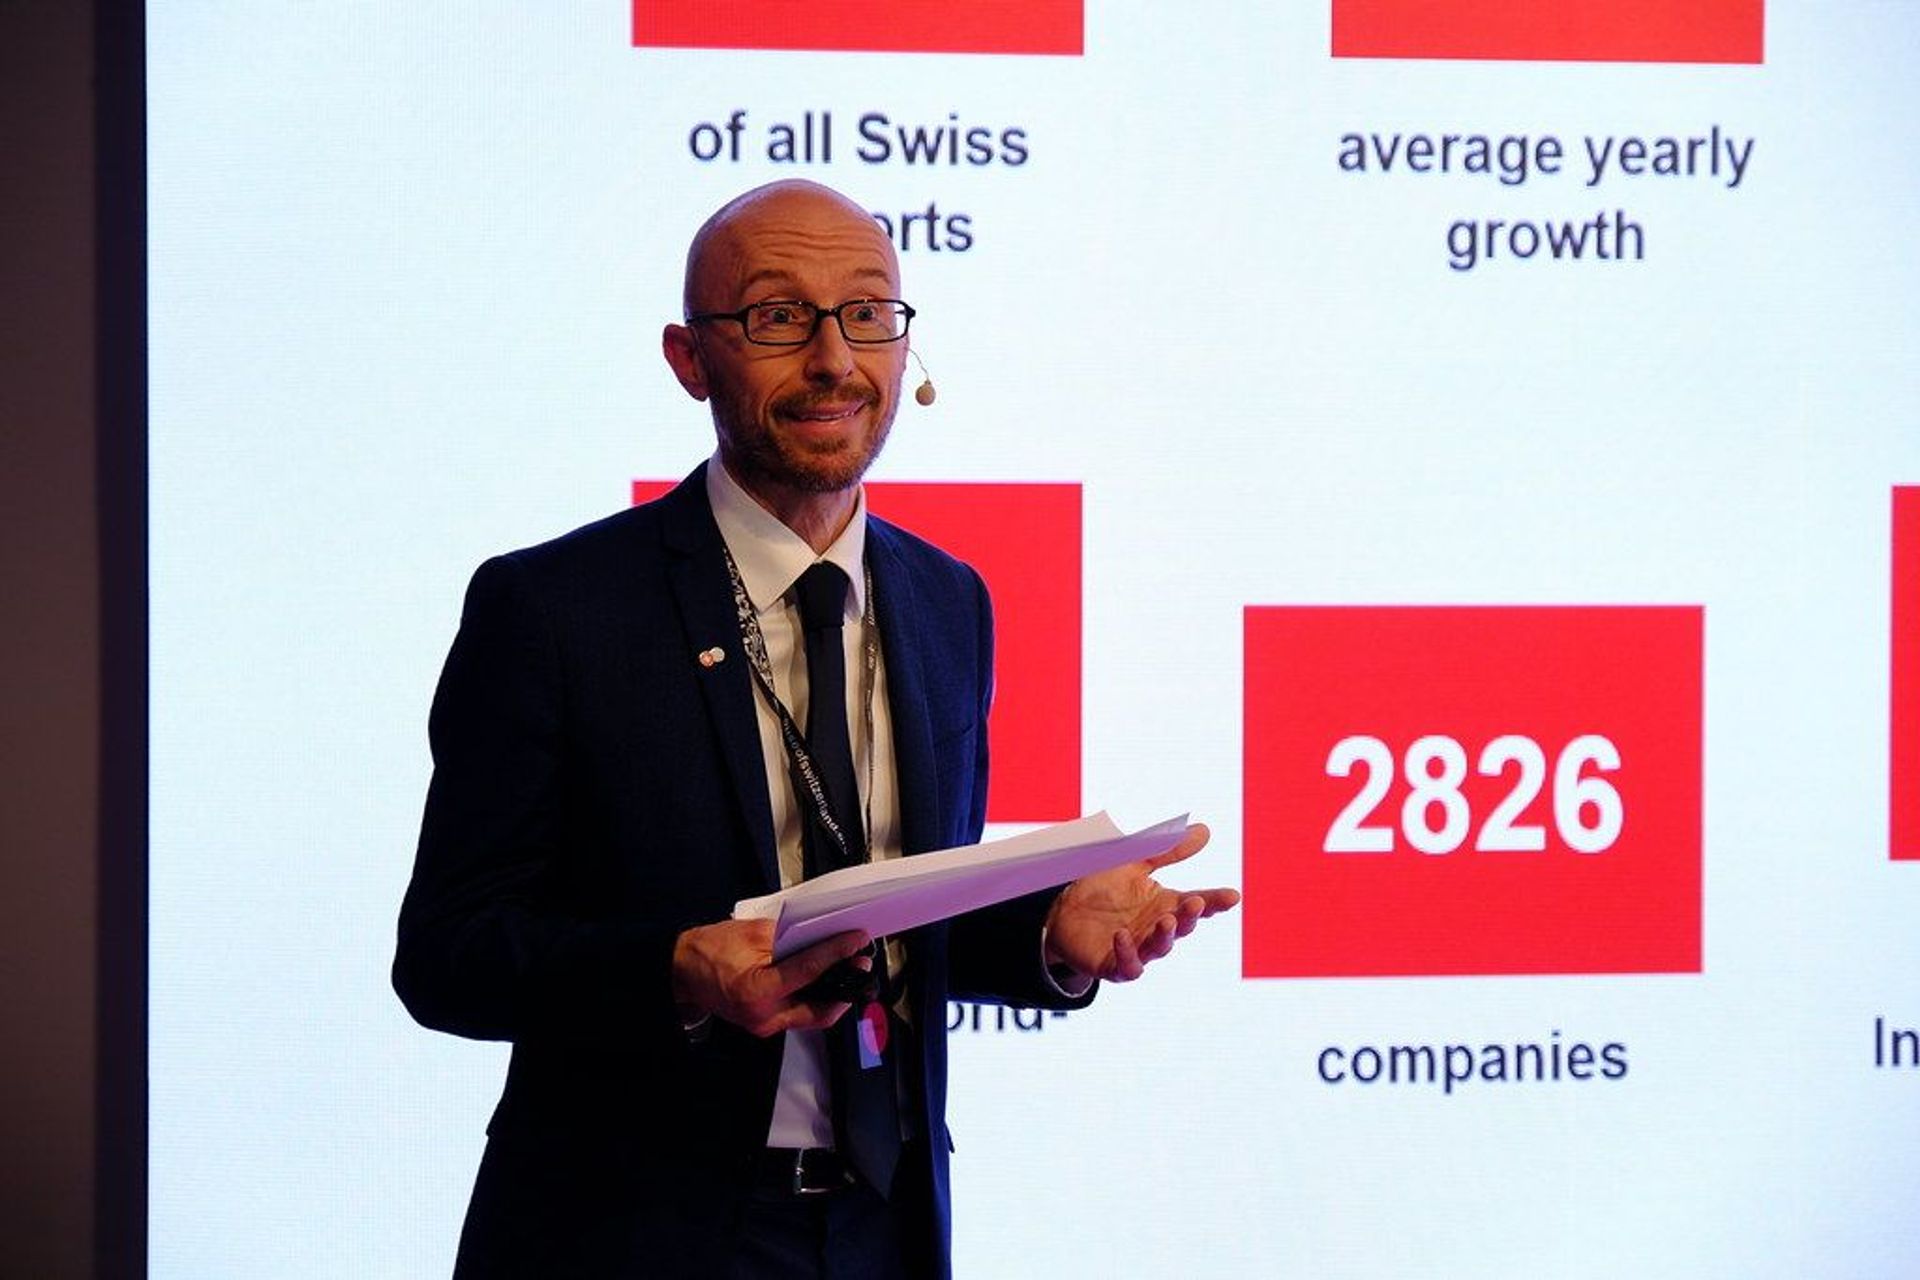 Stefan Zwicky, responsable du Swiss Business Hub Italie, a présenté l'introduction et le thème "La Suisse - votre lieu pour la médecine personnalisée" lors de l'événement "Tendances de la santé personnalisée" à Milan le 25 mai 2022